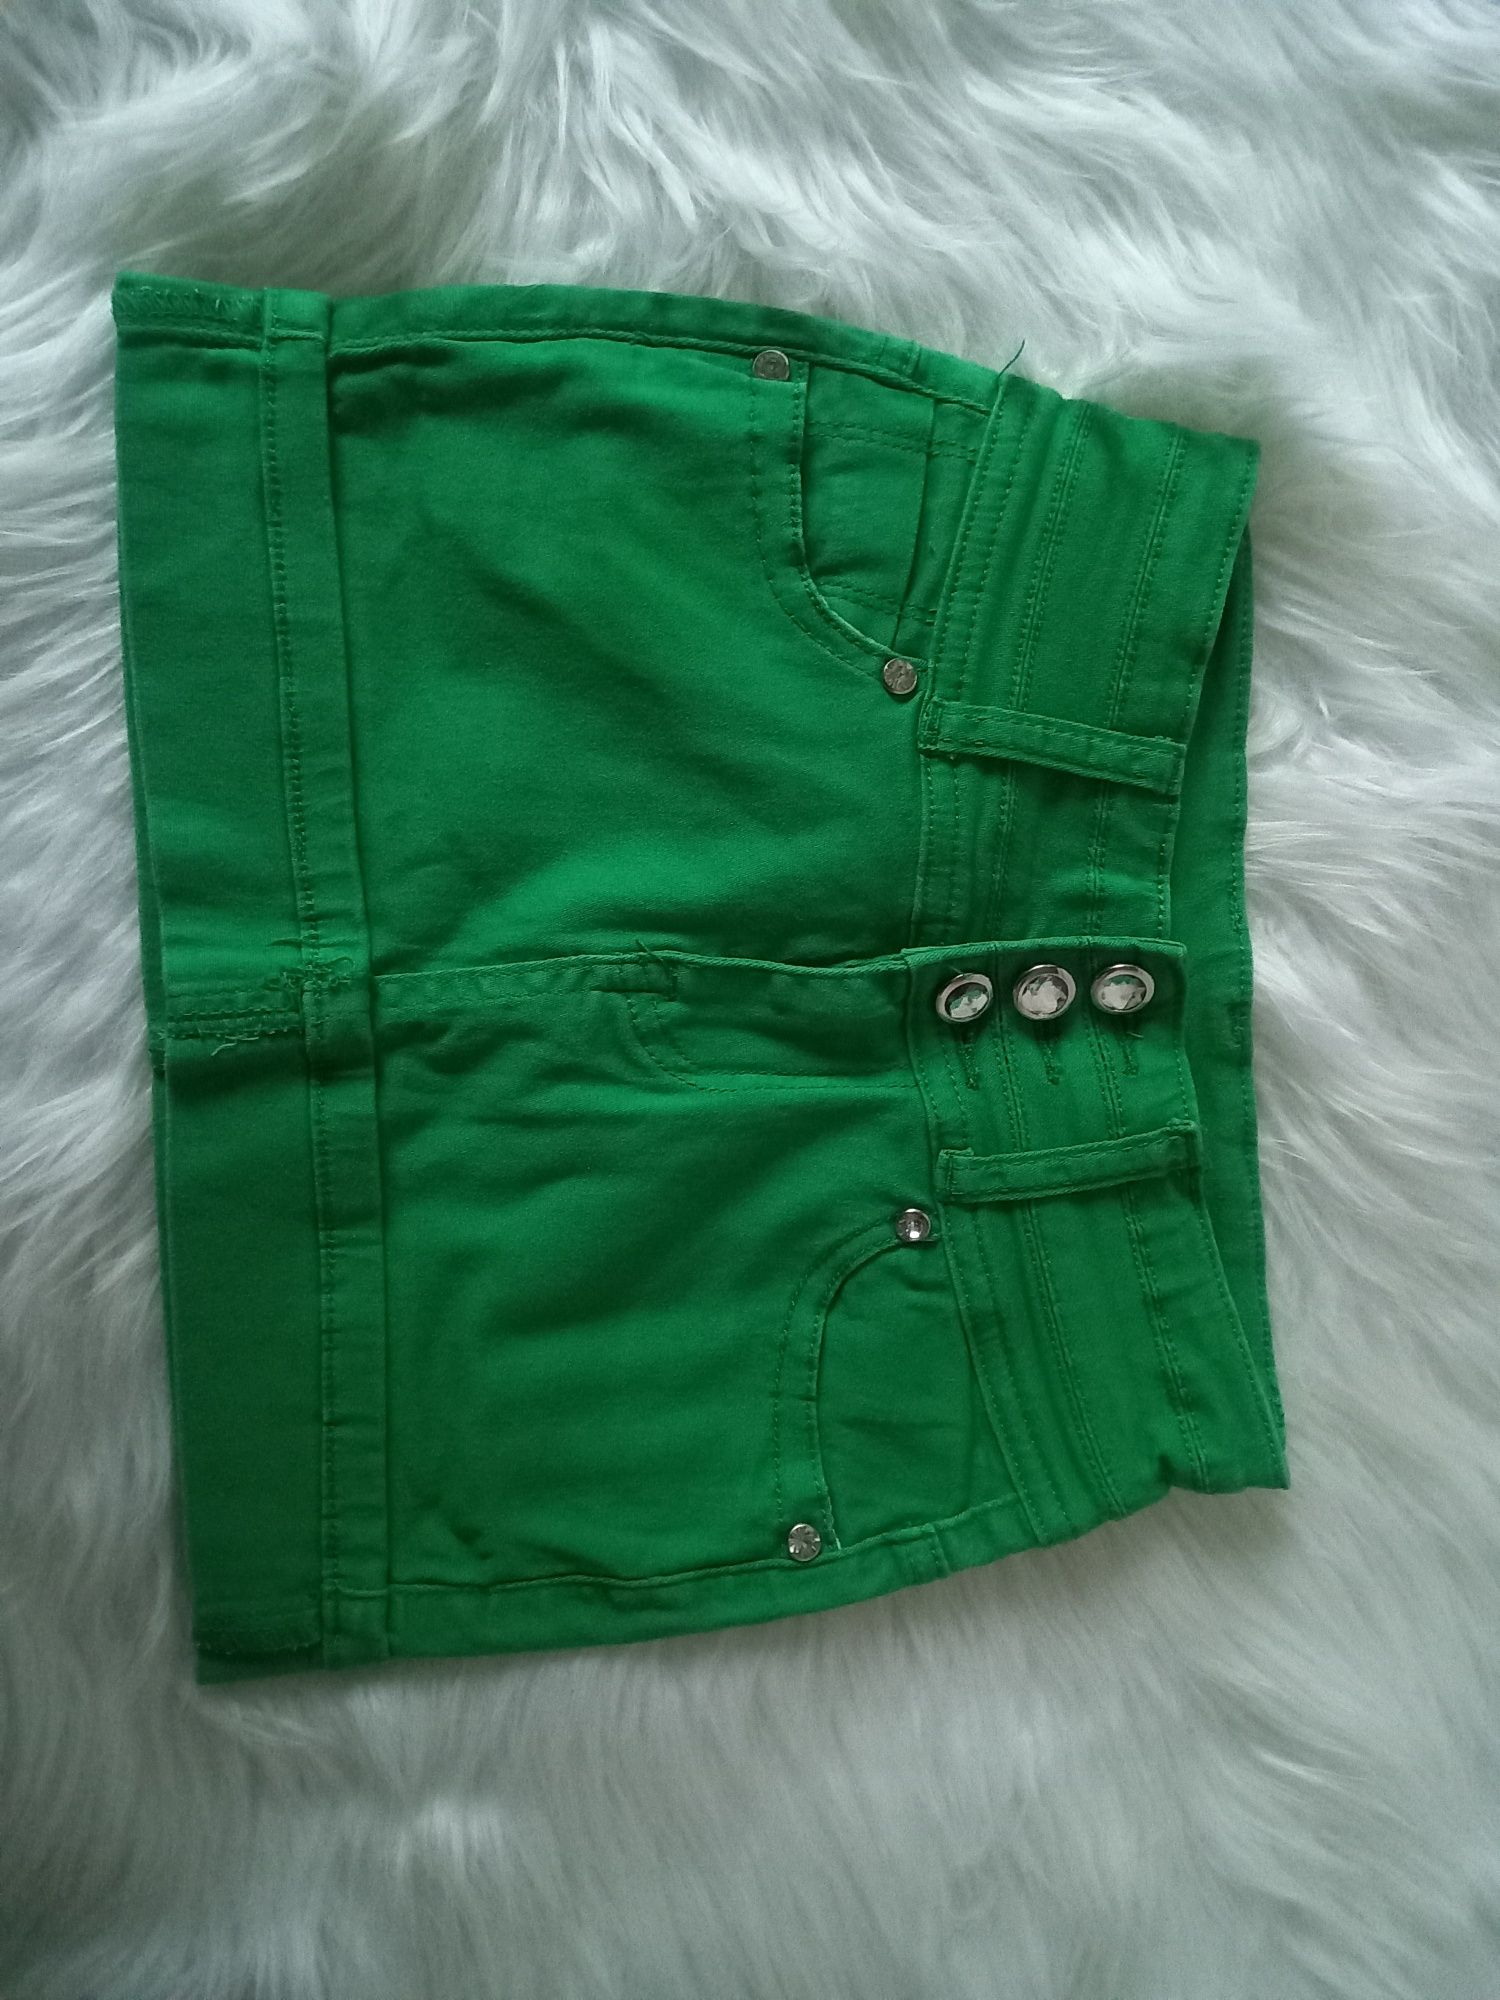 Spódniczka mini zielona 4-5 lat 110 cm Pebo Jeans